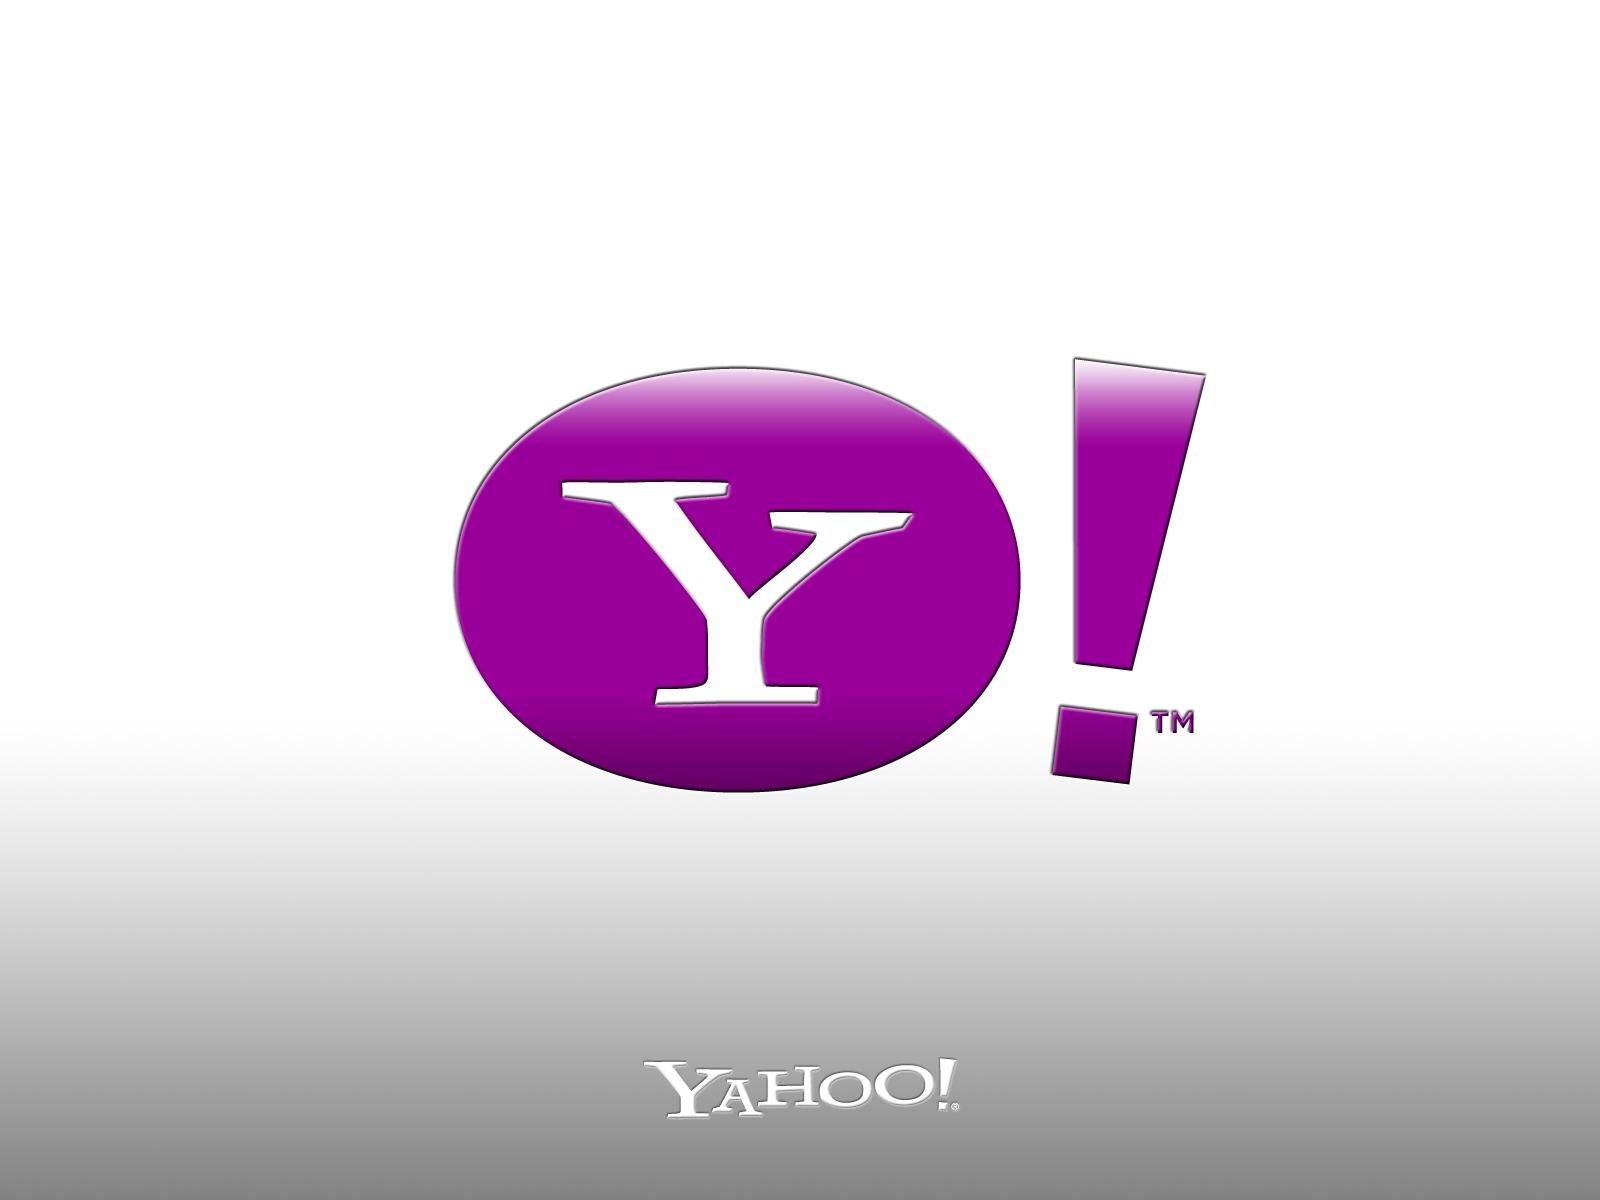 Twitter Headers / Facebook Covers / Wallpapers / Calendars: Yahoo